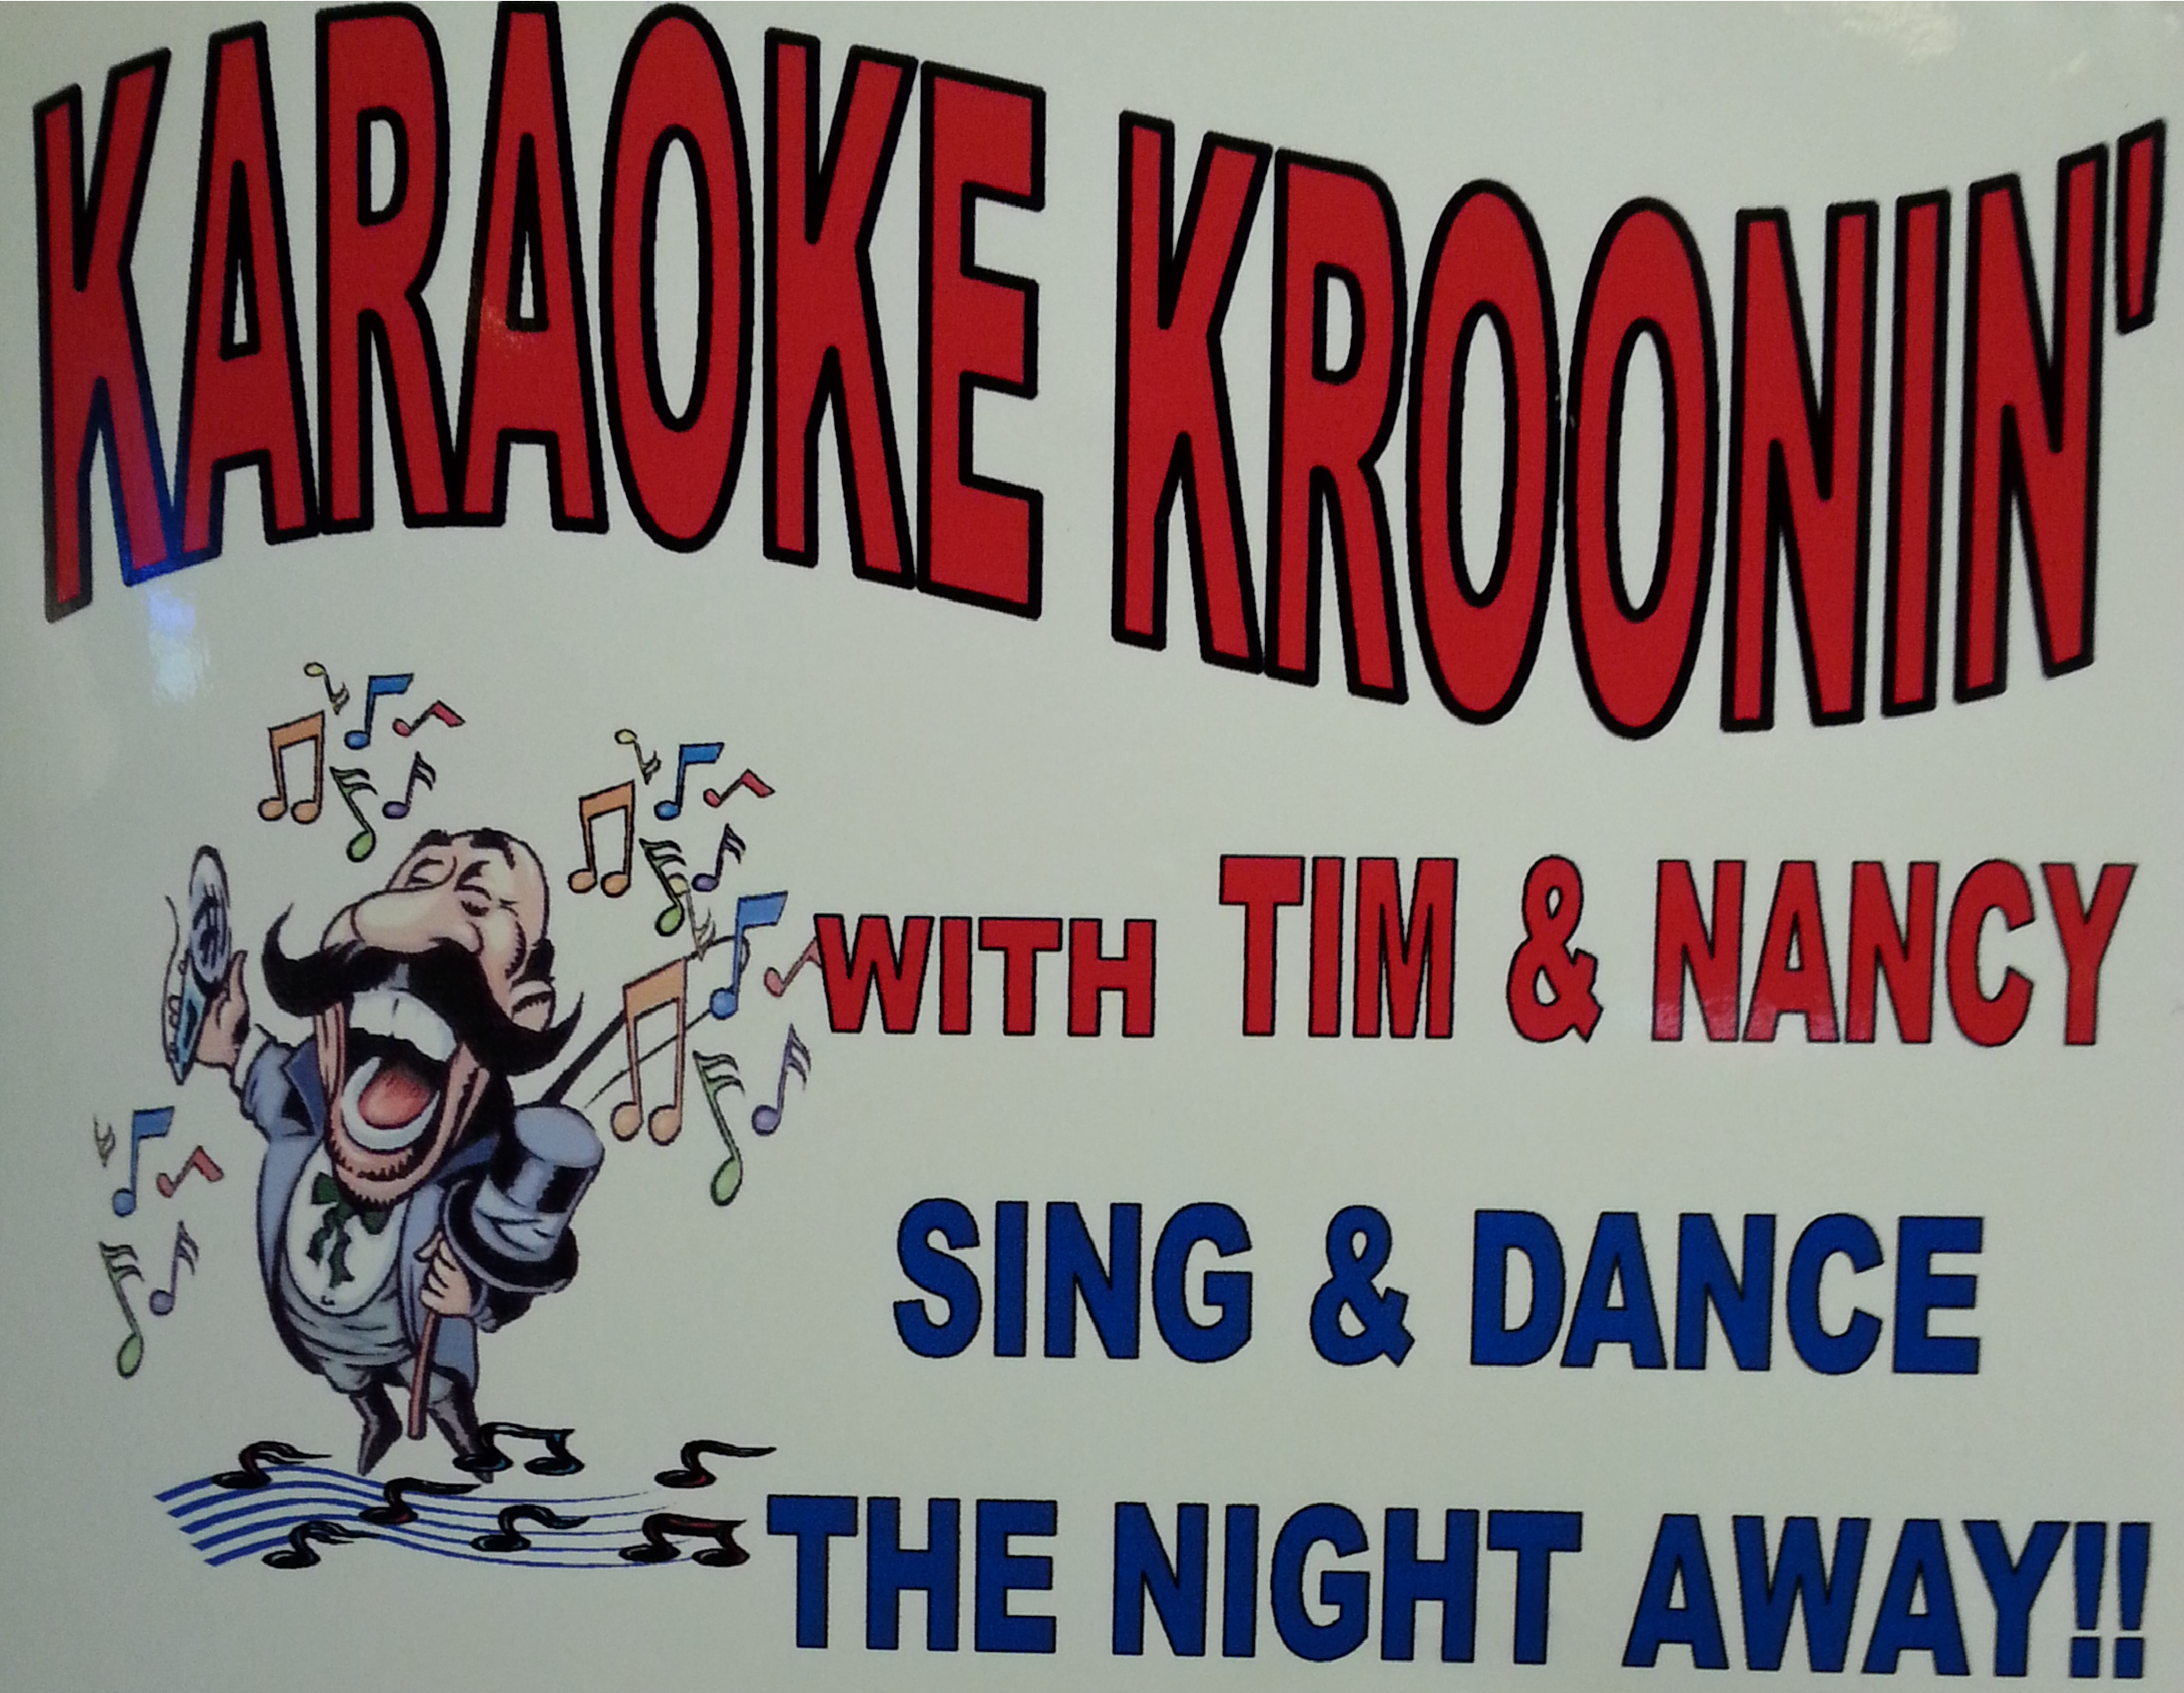 Tuesday - Karaoke Kroonin' 7-11 p.m.